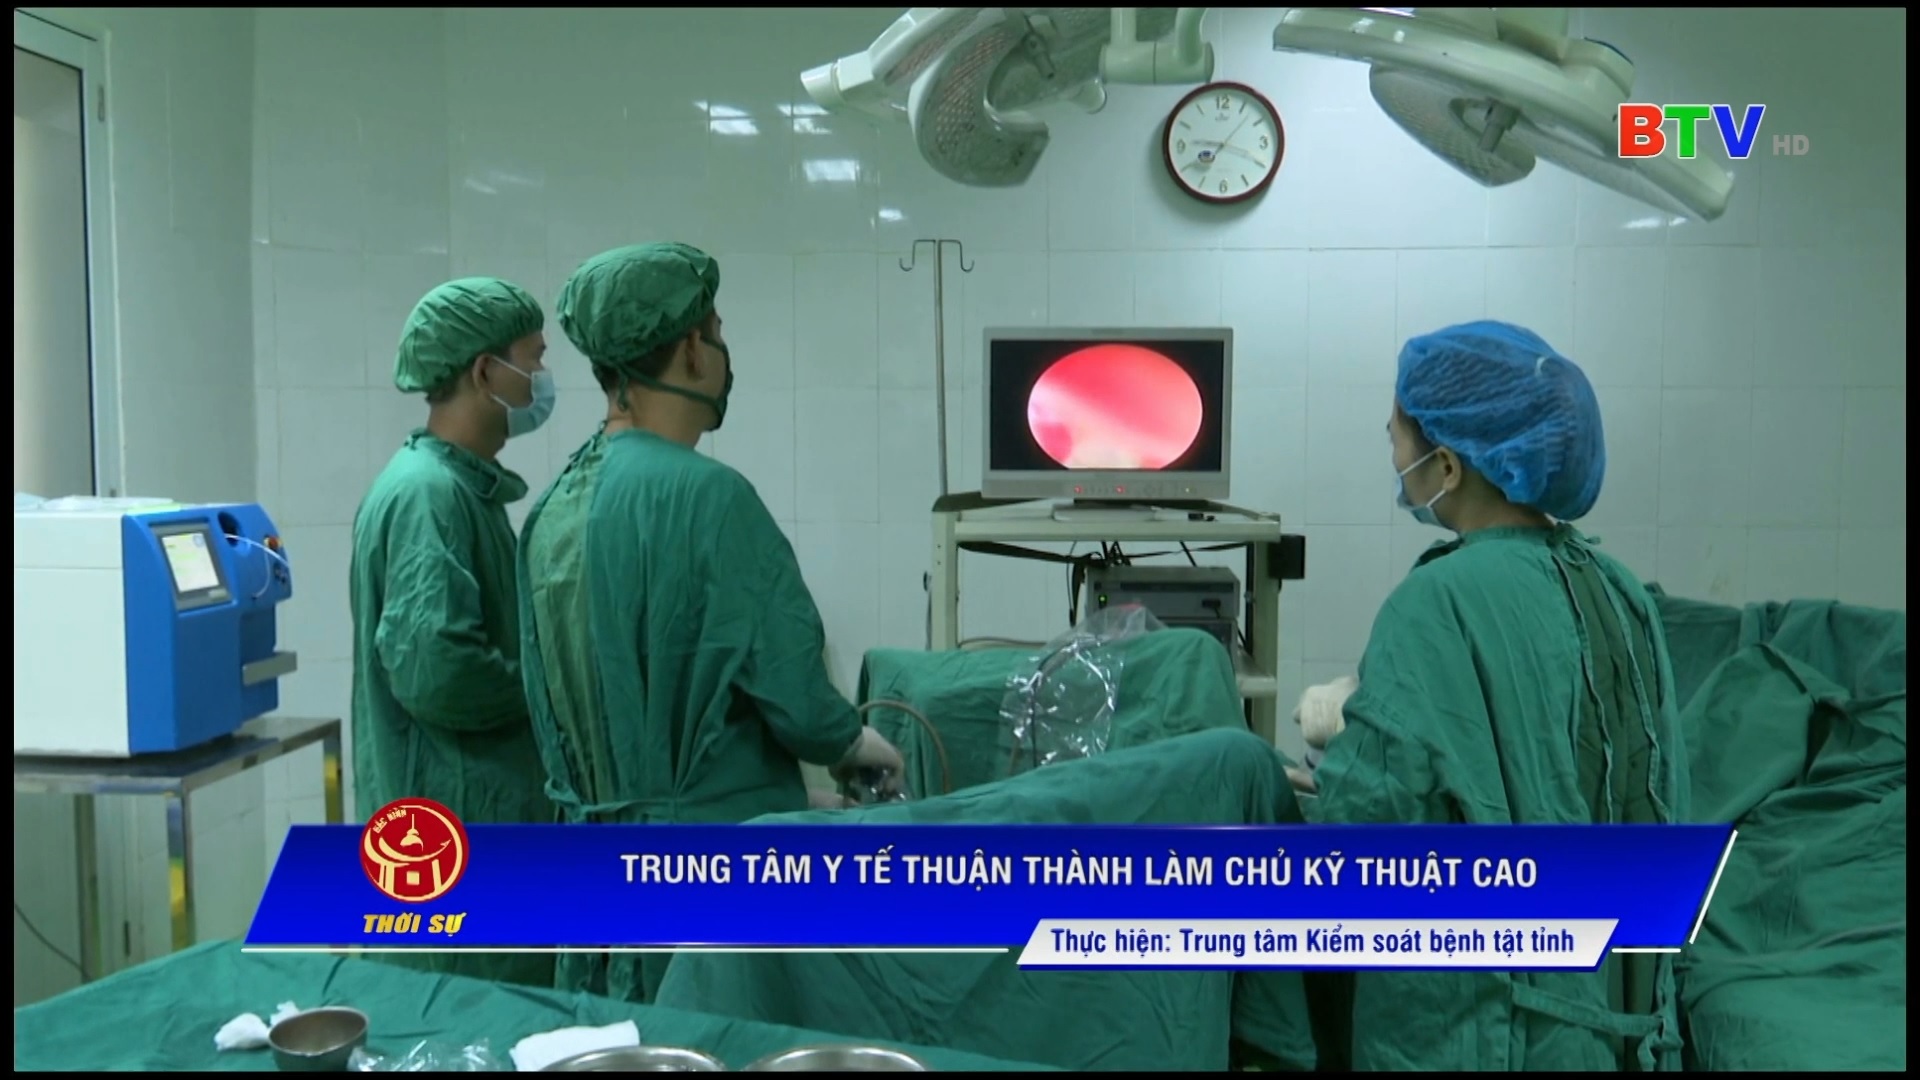 Trung tâm Y tế Thuận Thành làm chủ kỹ thuật cao